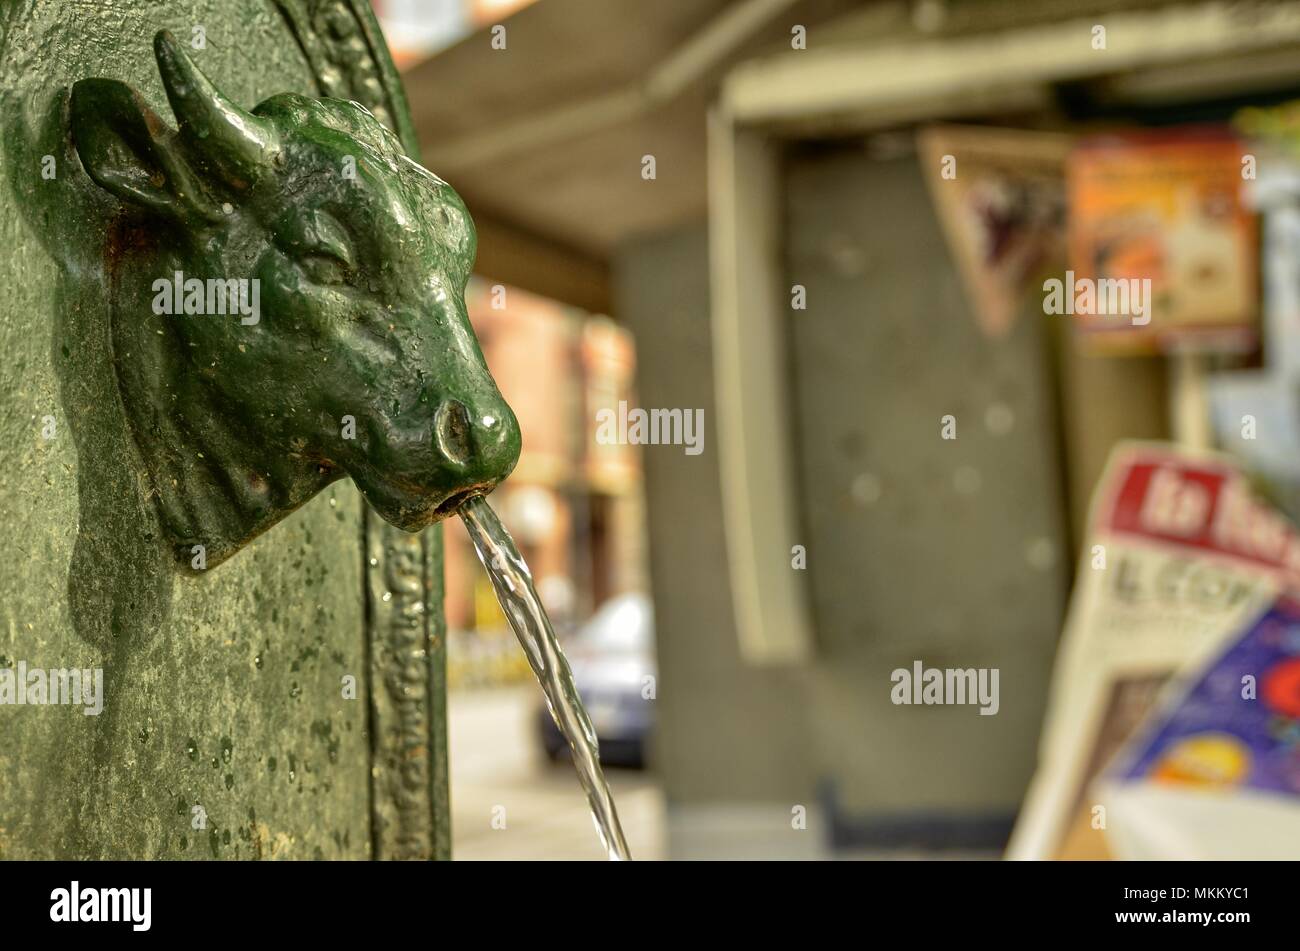 Torino, la Regione Piemonte, Italia. Maggio 2018. Il simbolico fontana di Torino, il torello o turet in piemontese. Essi si trovano in ogni angolo. Foto Stock